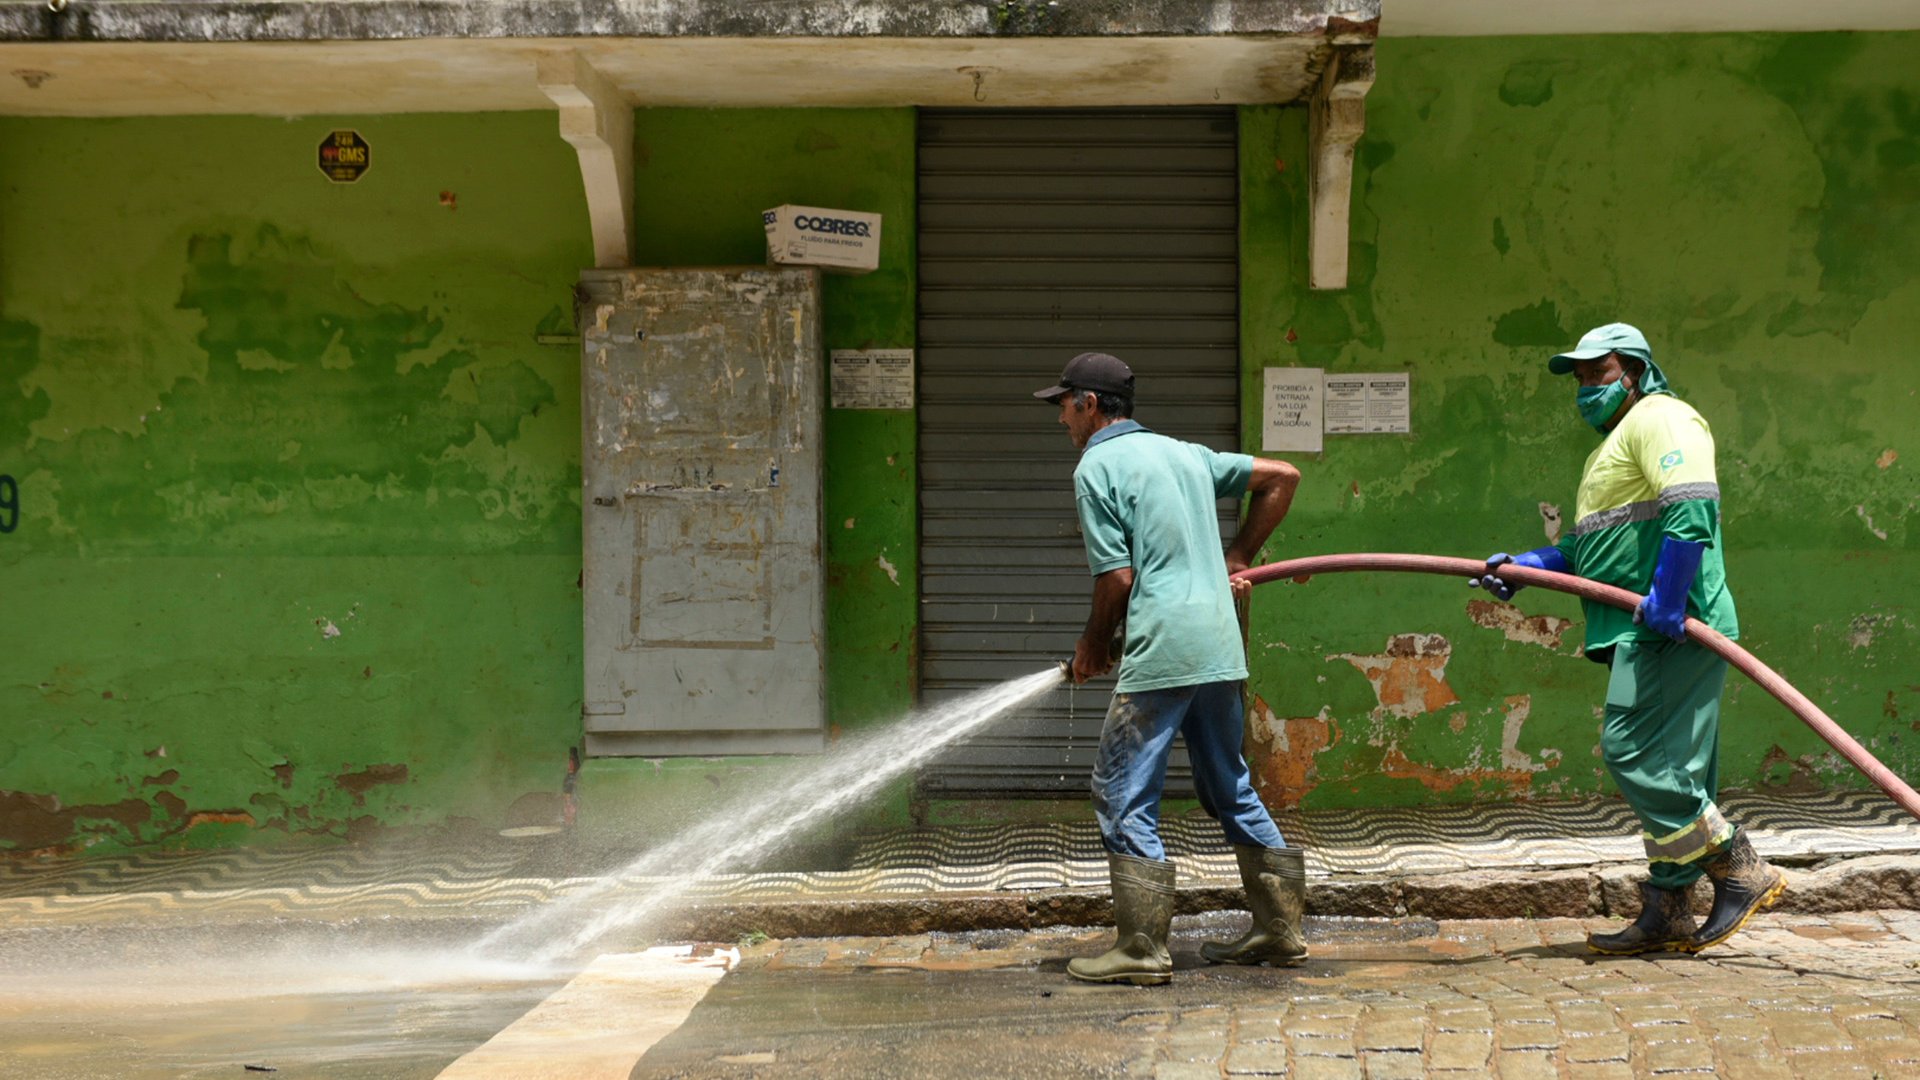 Funcionários da prefeitura limpam as ruas usando uma mangueira